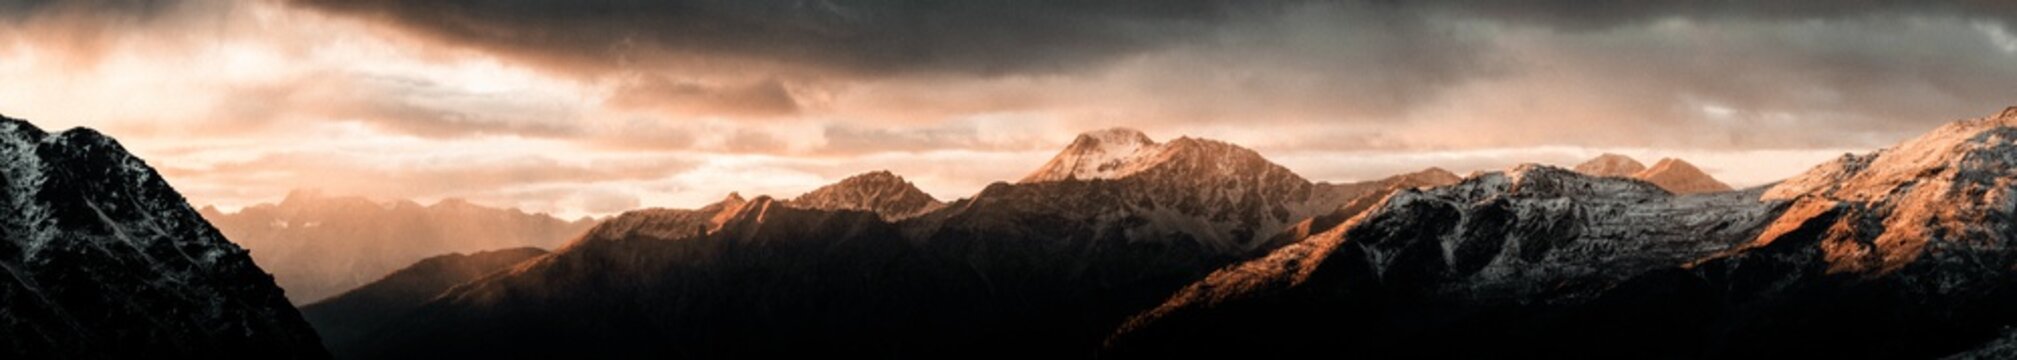 Alpenpanorama bei Sonnenaufgang auf dem Gipfel eines Berges